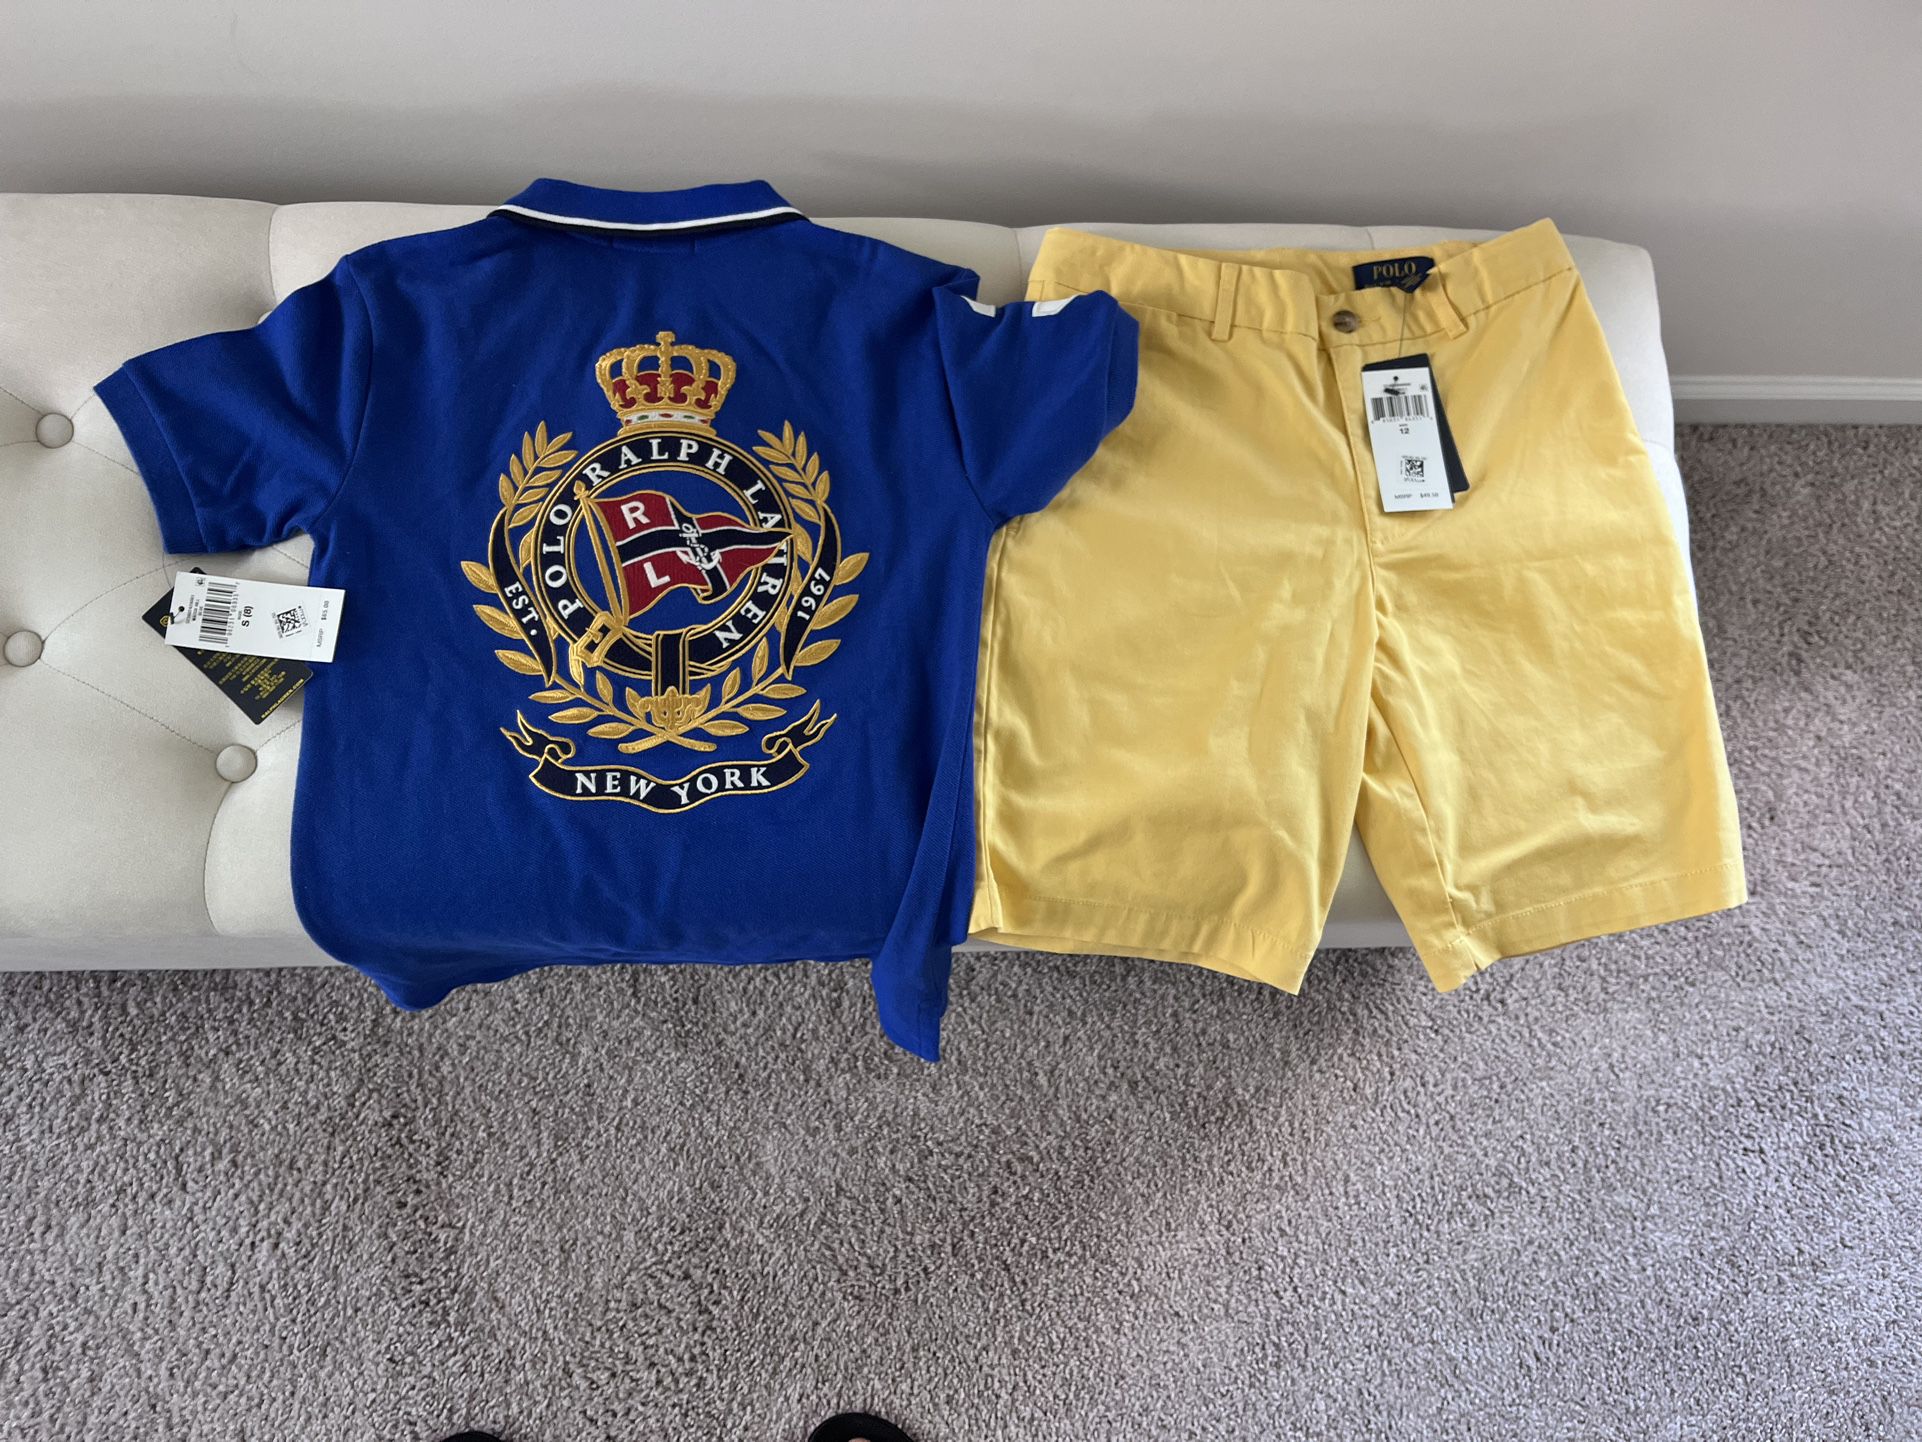 Kids Ralph Lauren Outdit Shirt Sz(8) And Shorts Sz (12)